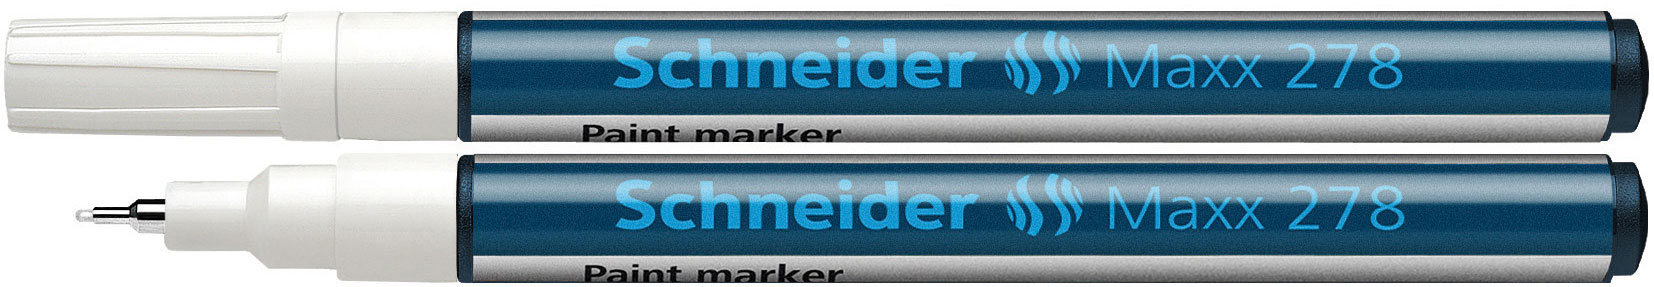 SCHNEIDER Lackmarker Maxx 278 0,8 mm weiß